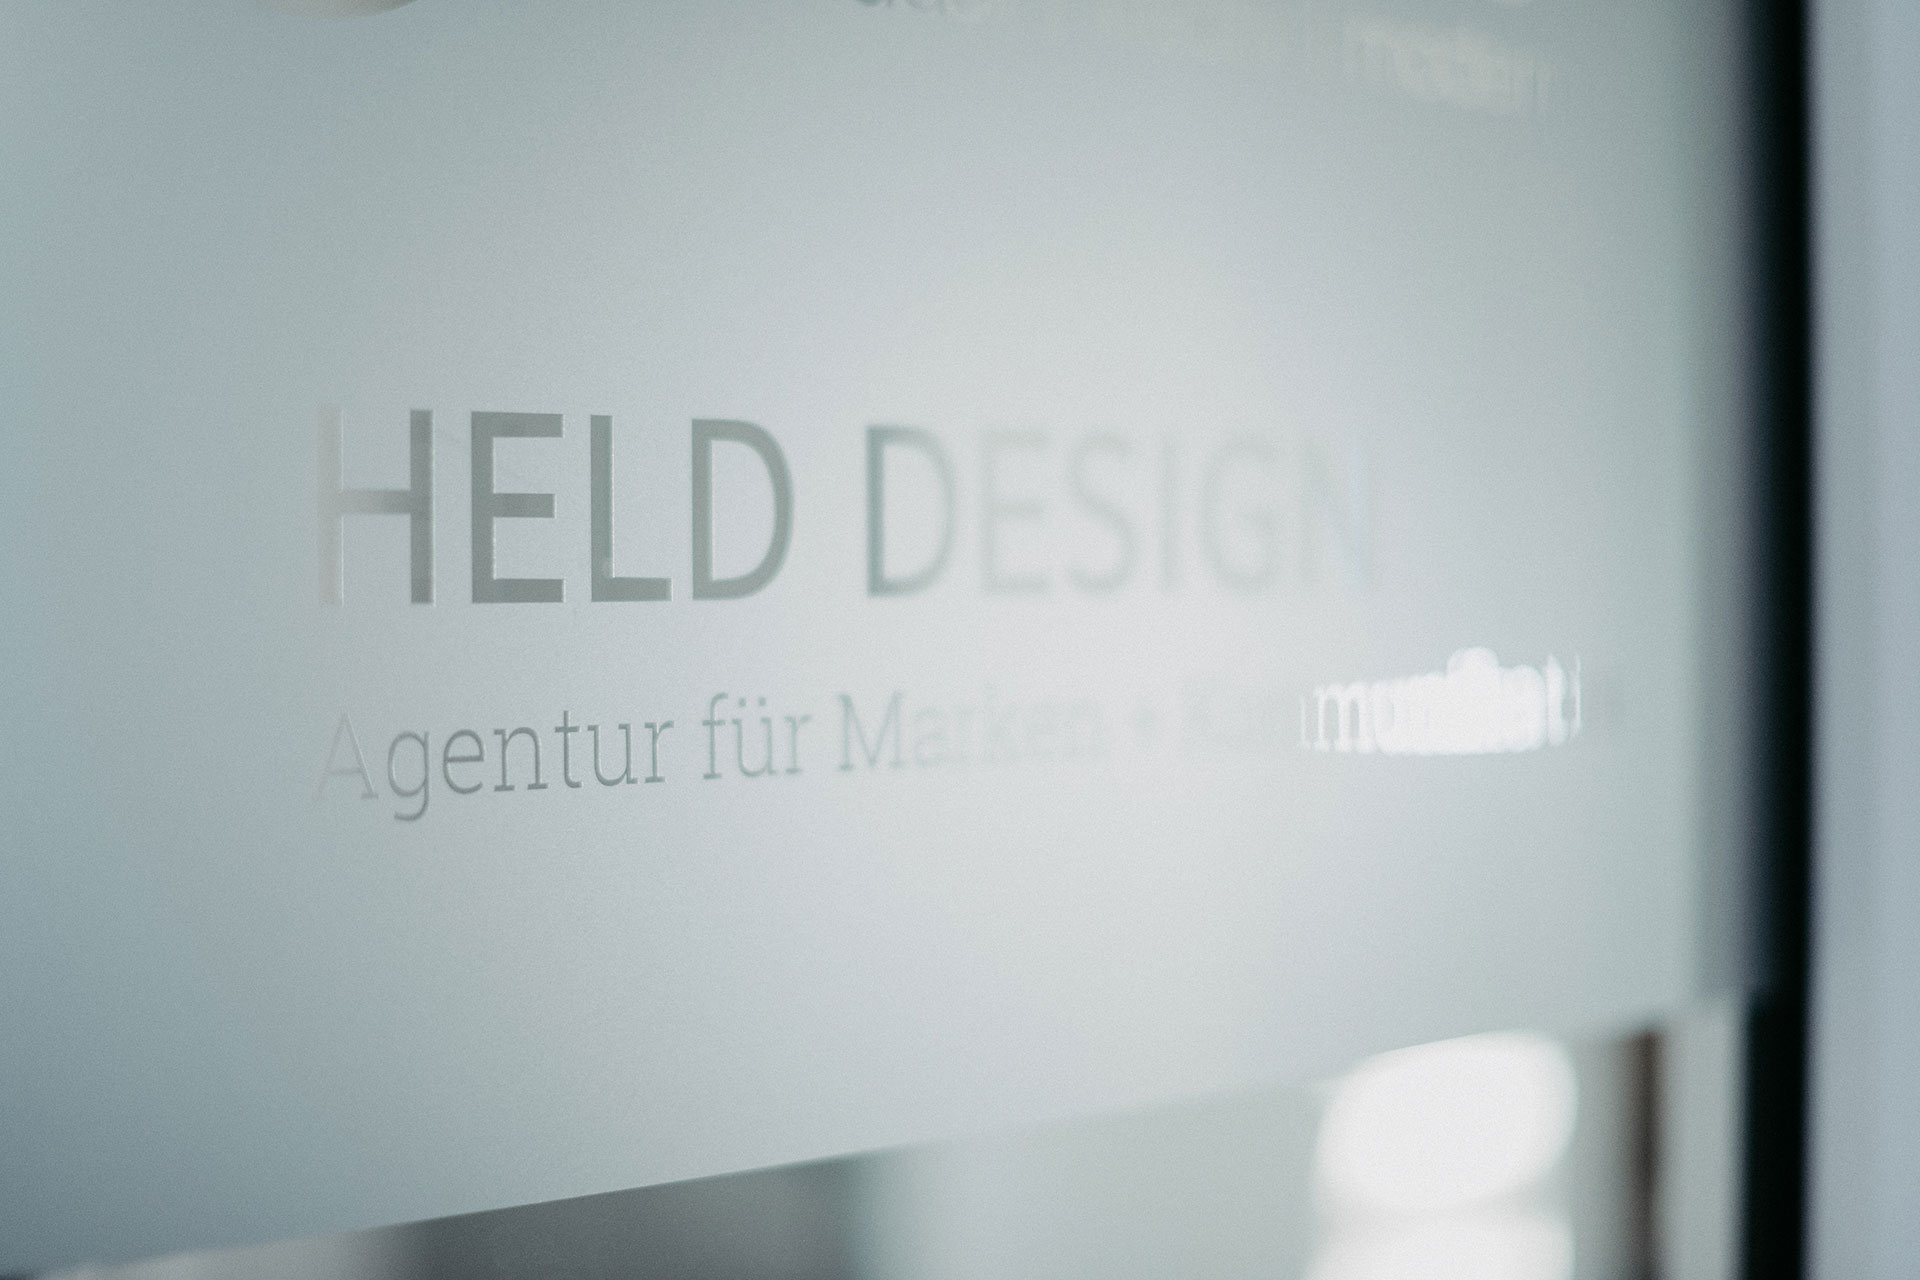 Held Design – Agentur für Marken + Kommunikation